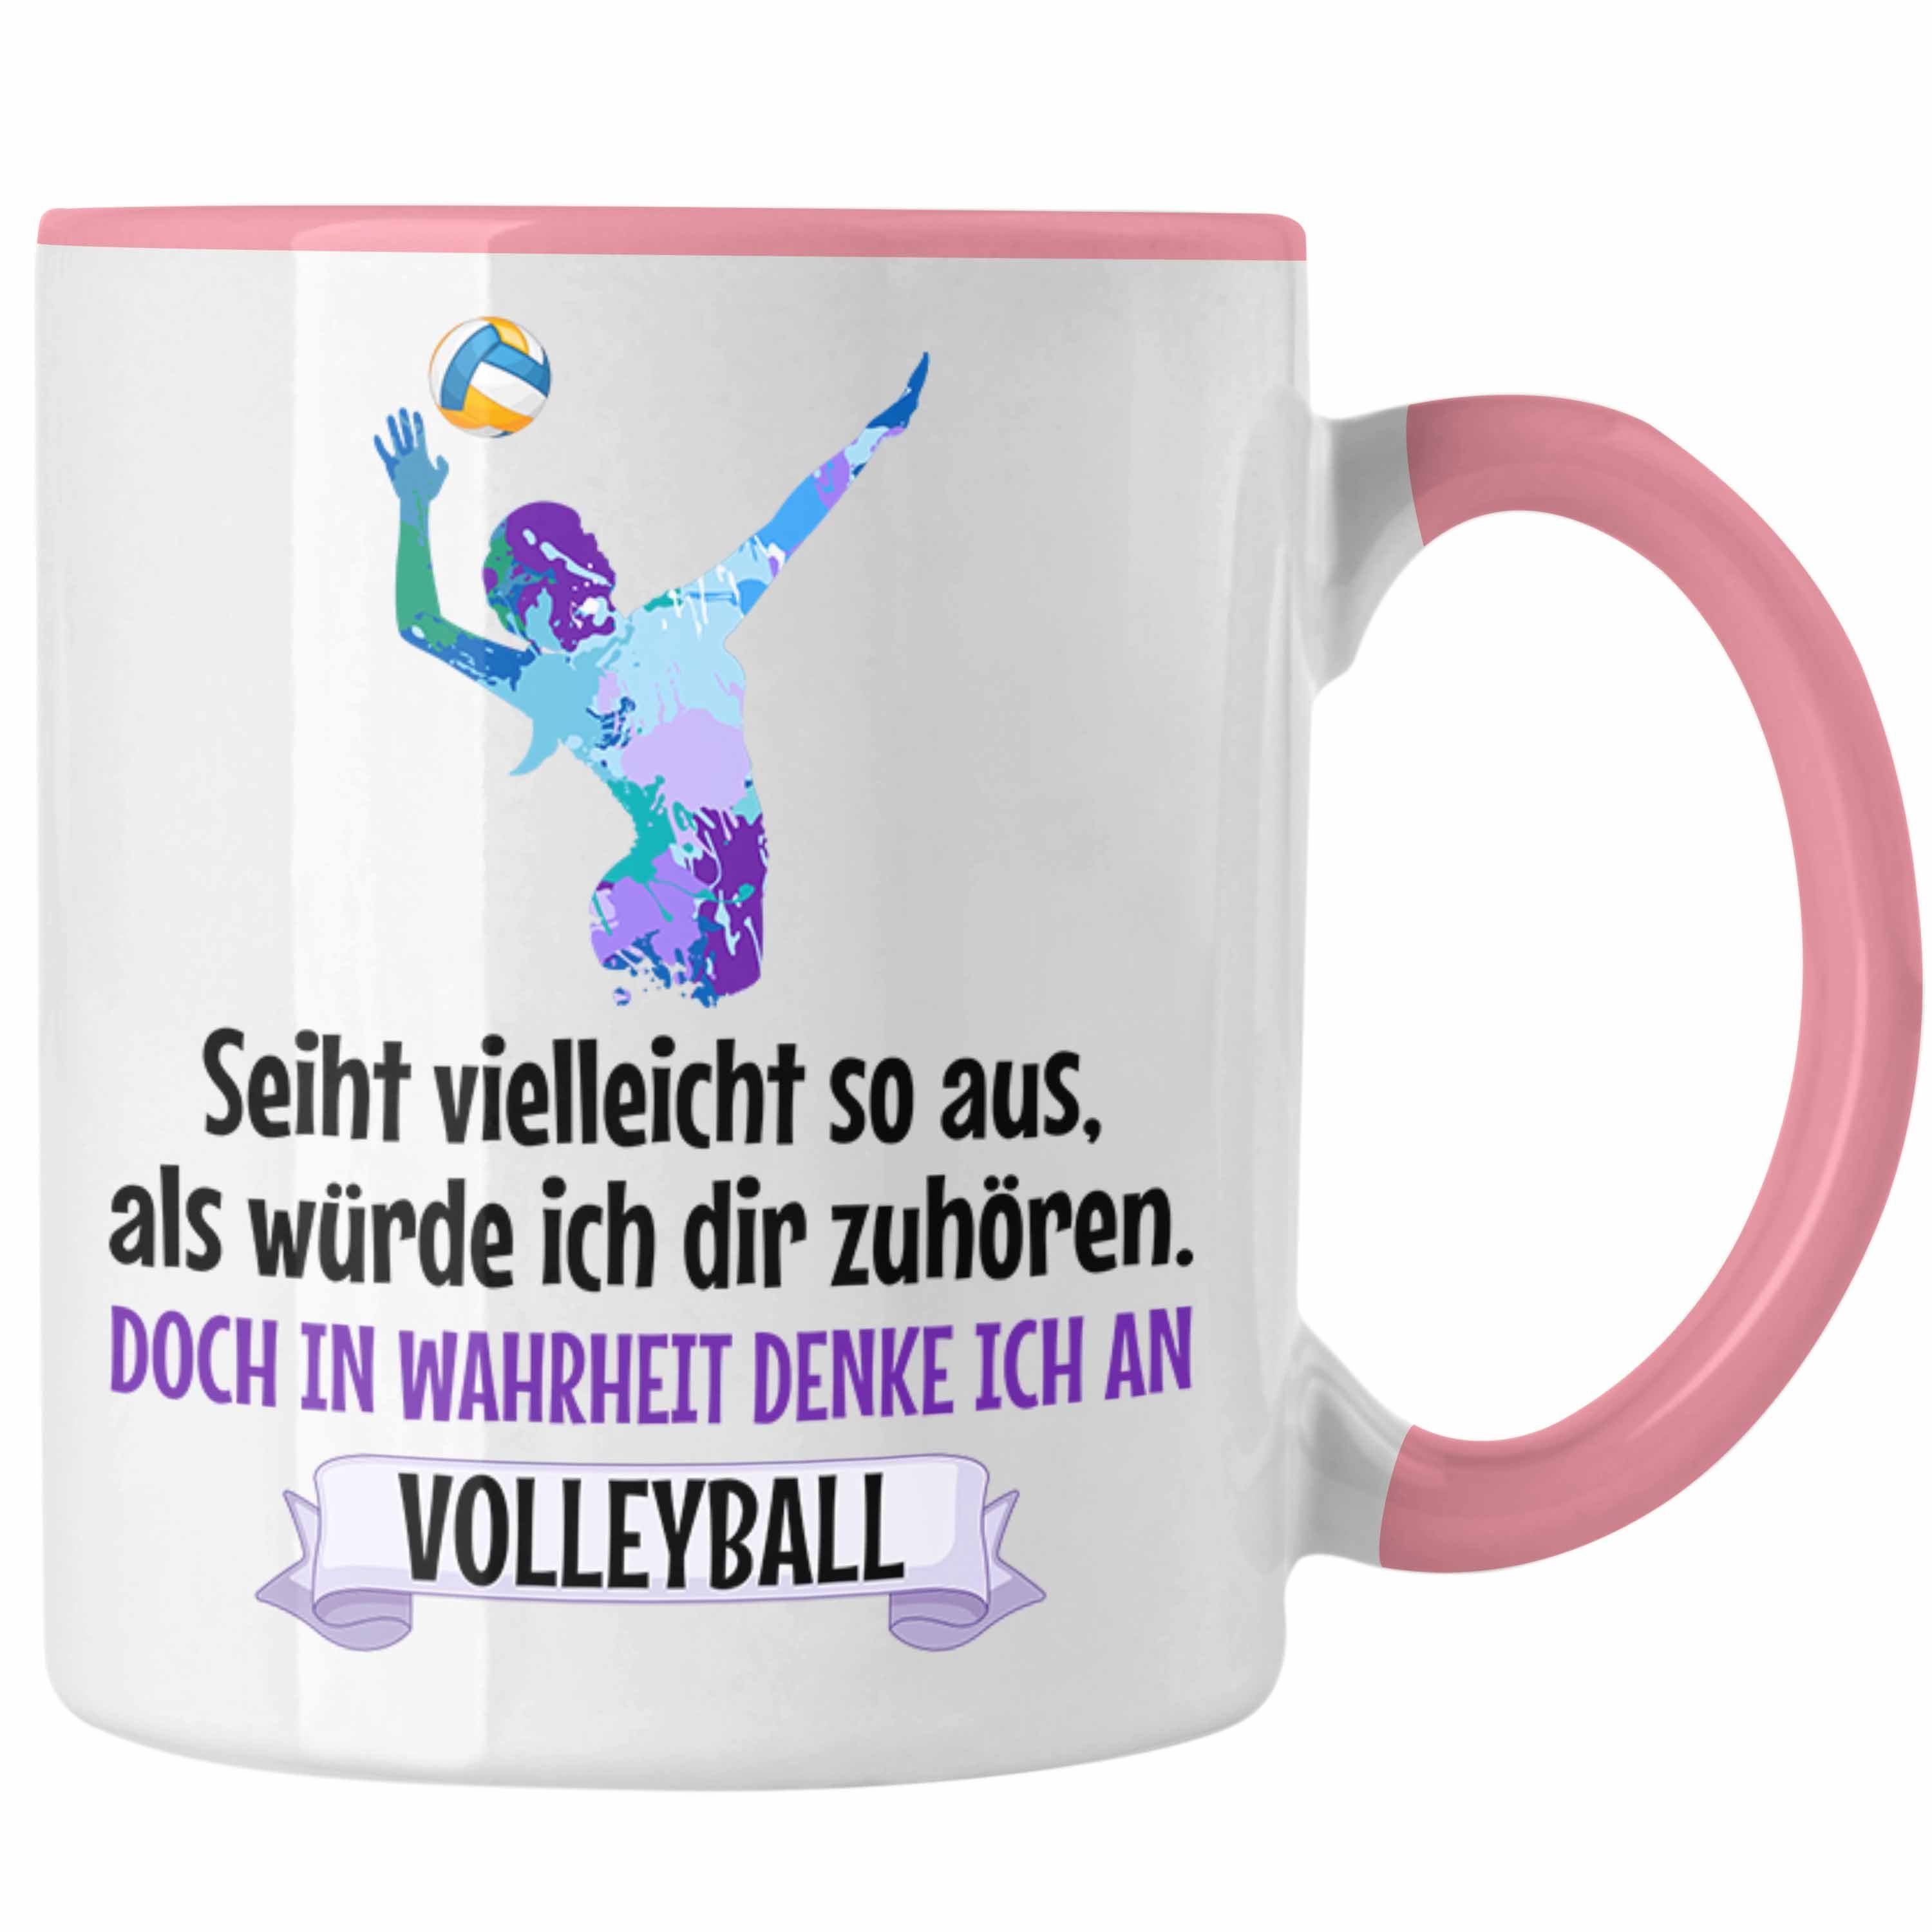 Trendation Tasse Trendation - Volleyball Mädchen Rosa Zubehör Geschenk Tasse Kaffee Spielerin Volleyball-Spieler Herren Coach